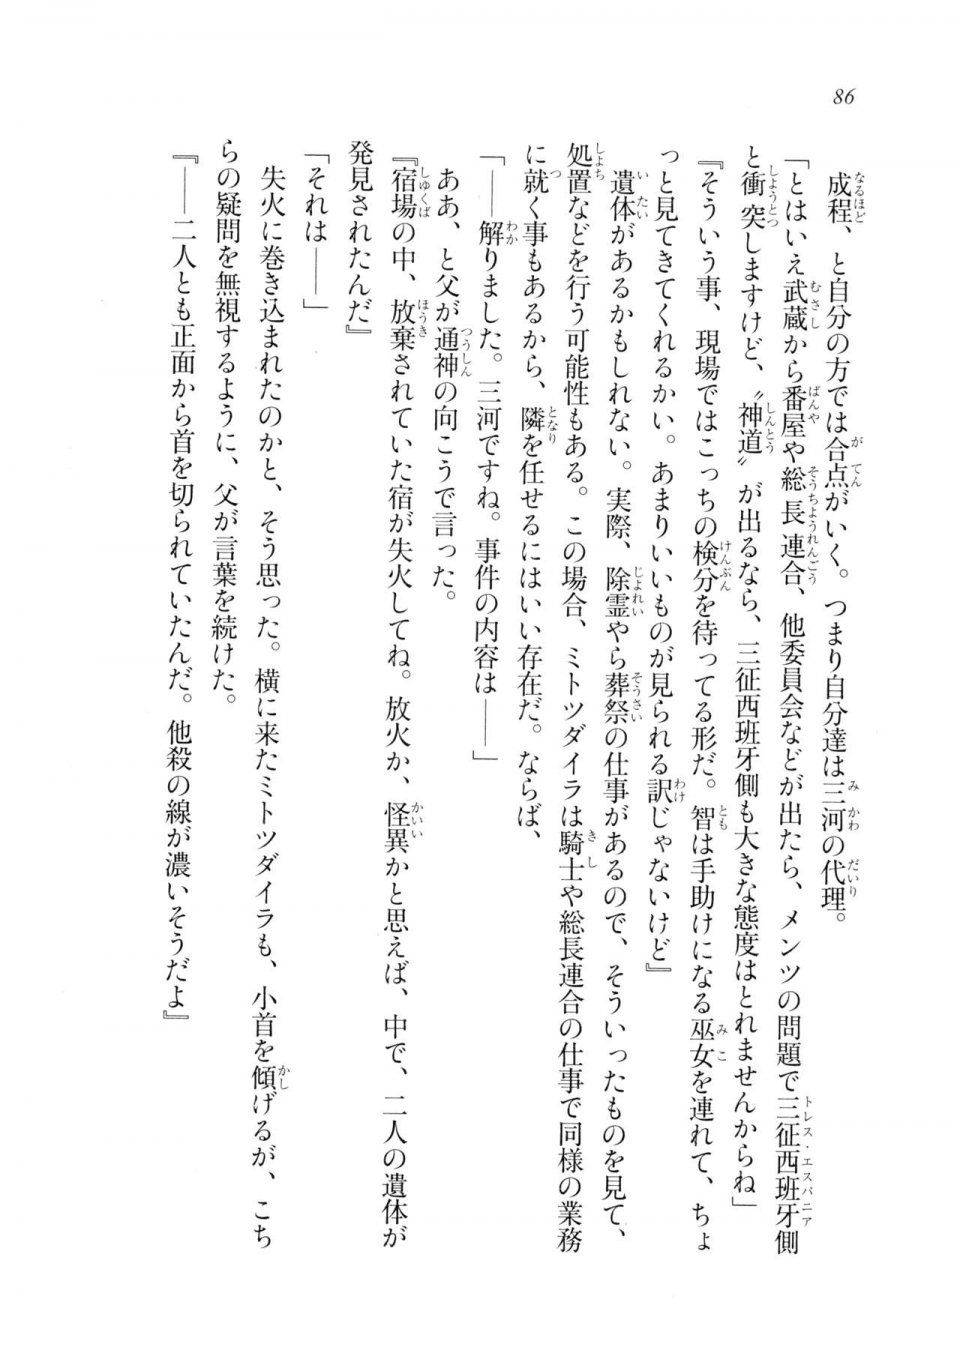 Kyoukai Senjou no Horizon LN Sidestory Vol 2 - Photo #84